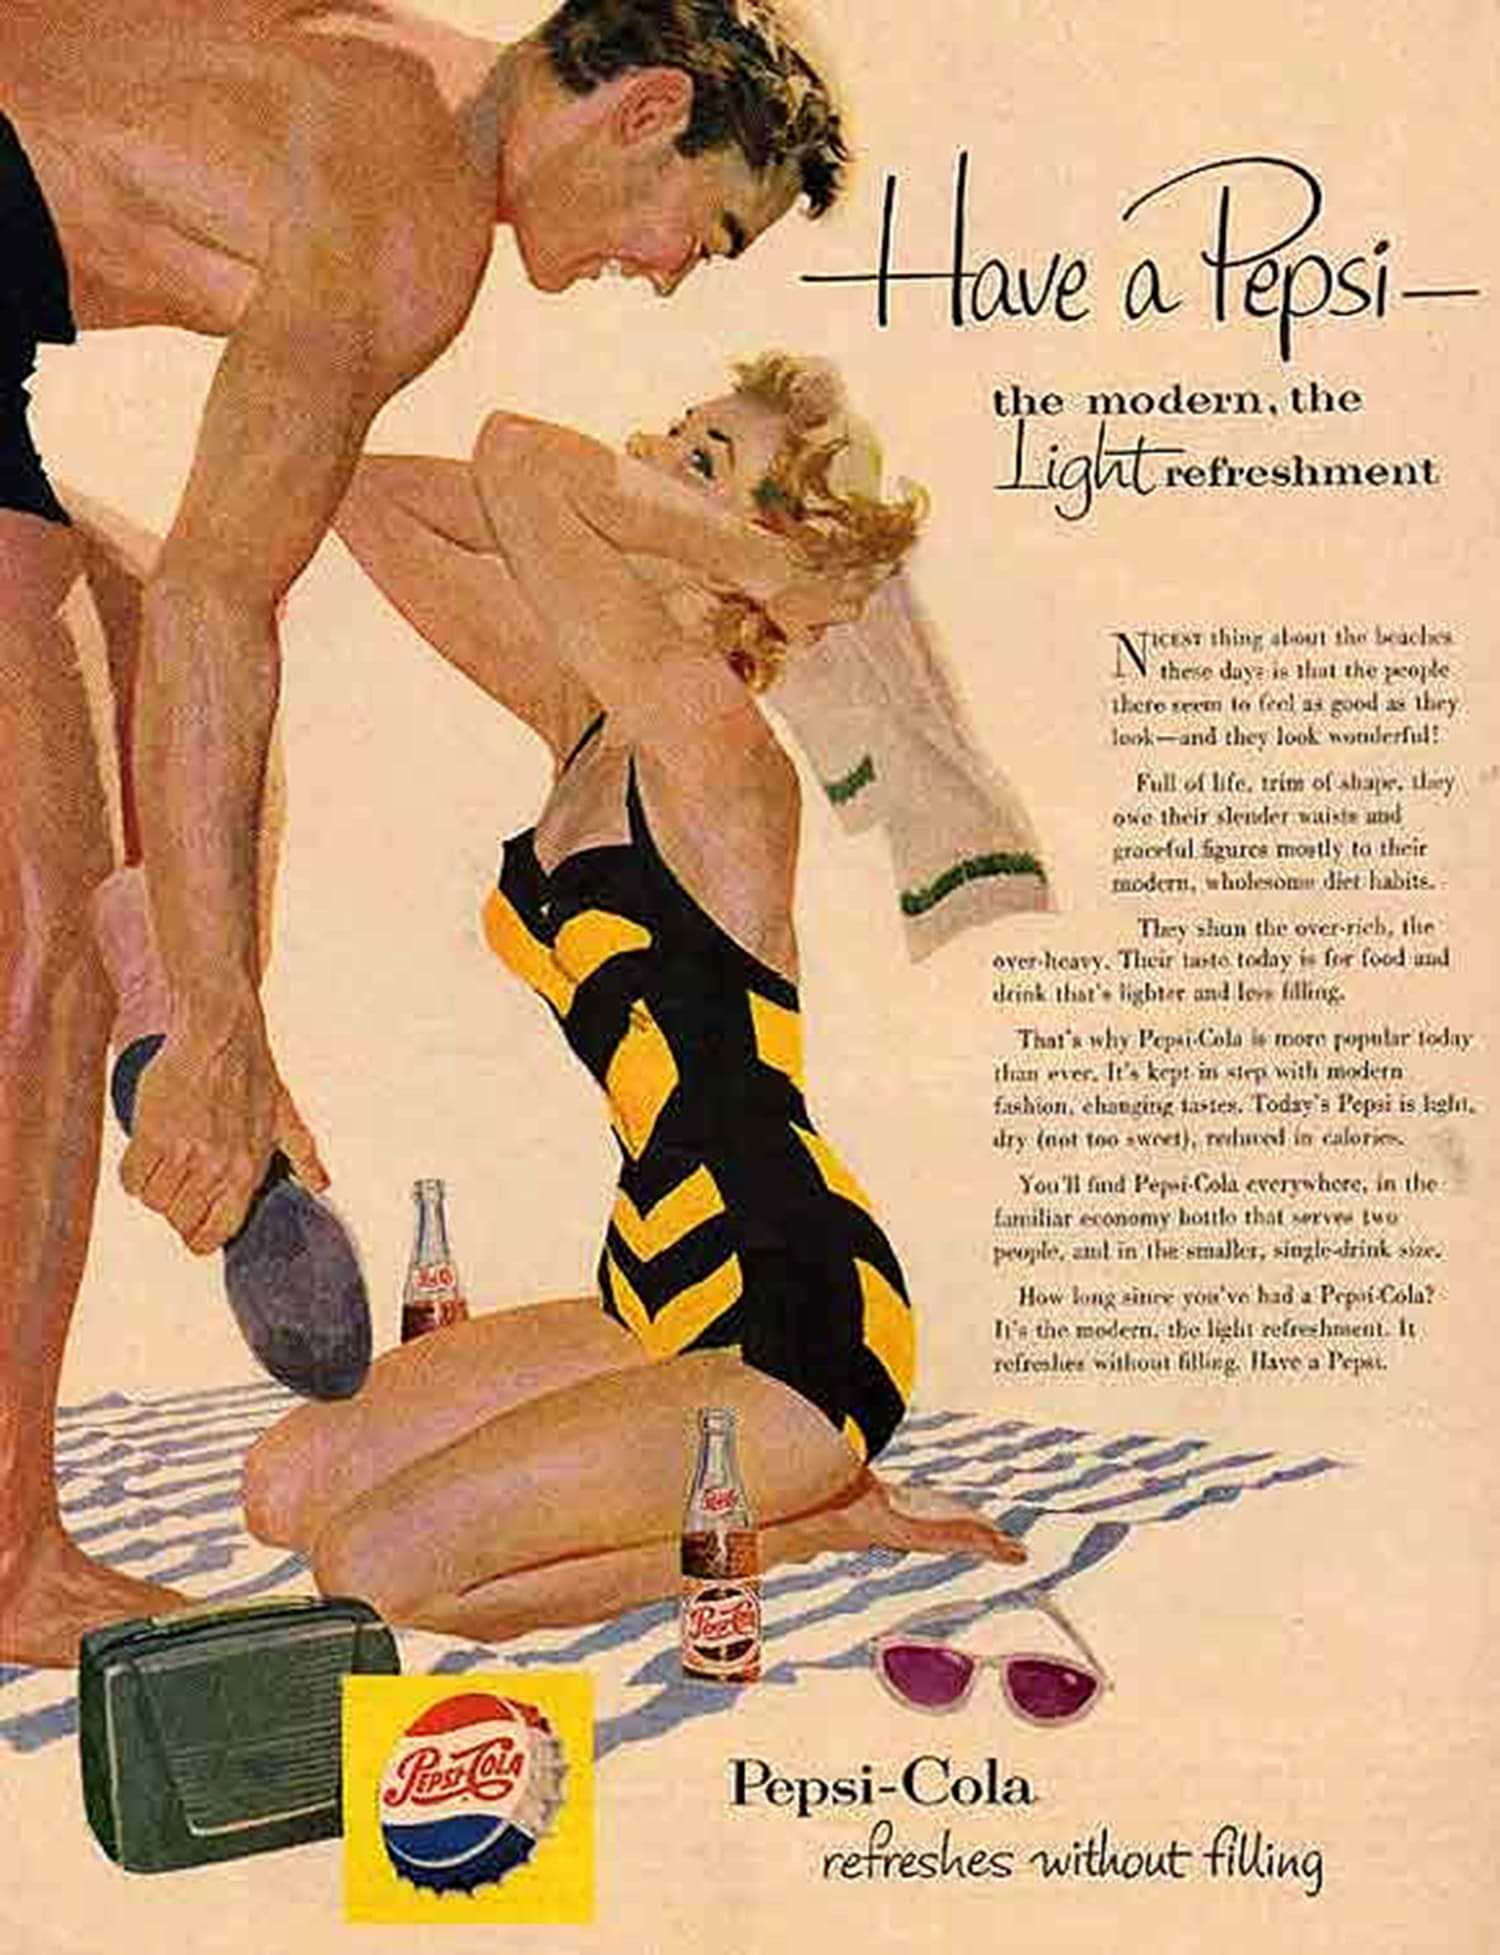 Vintage ad